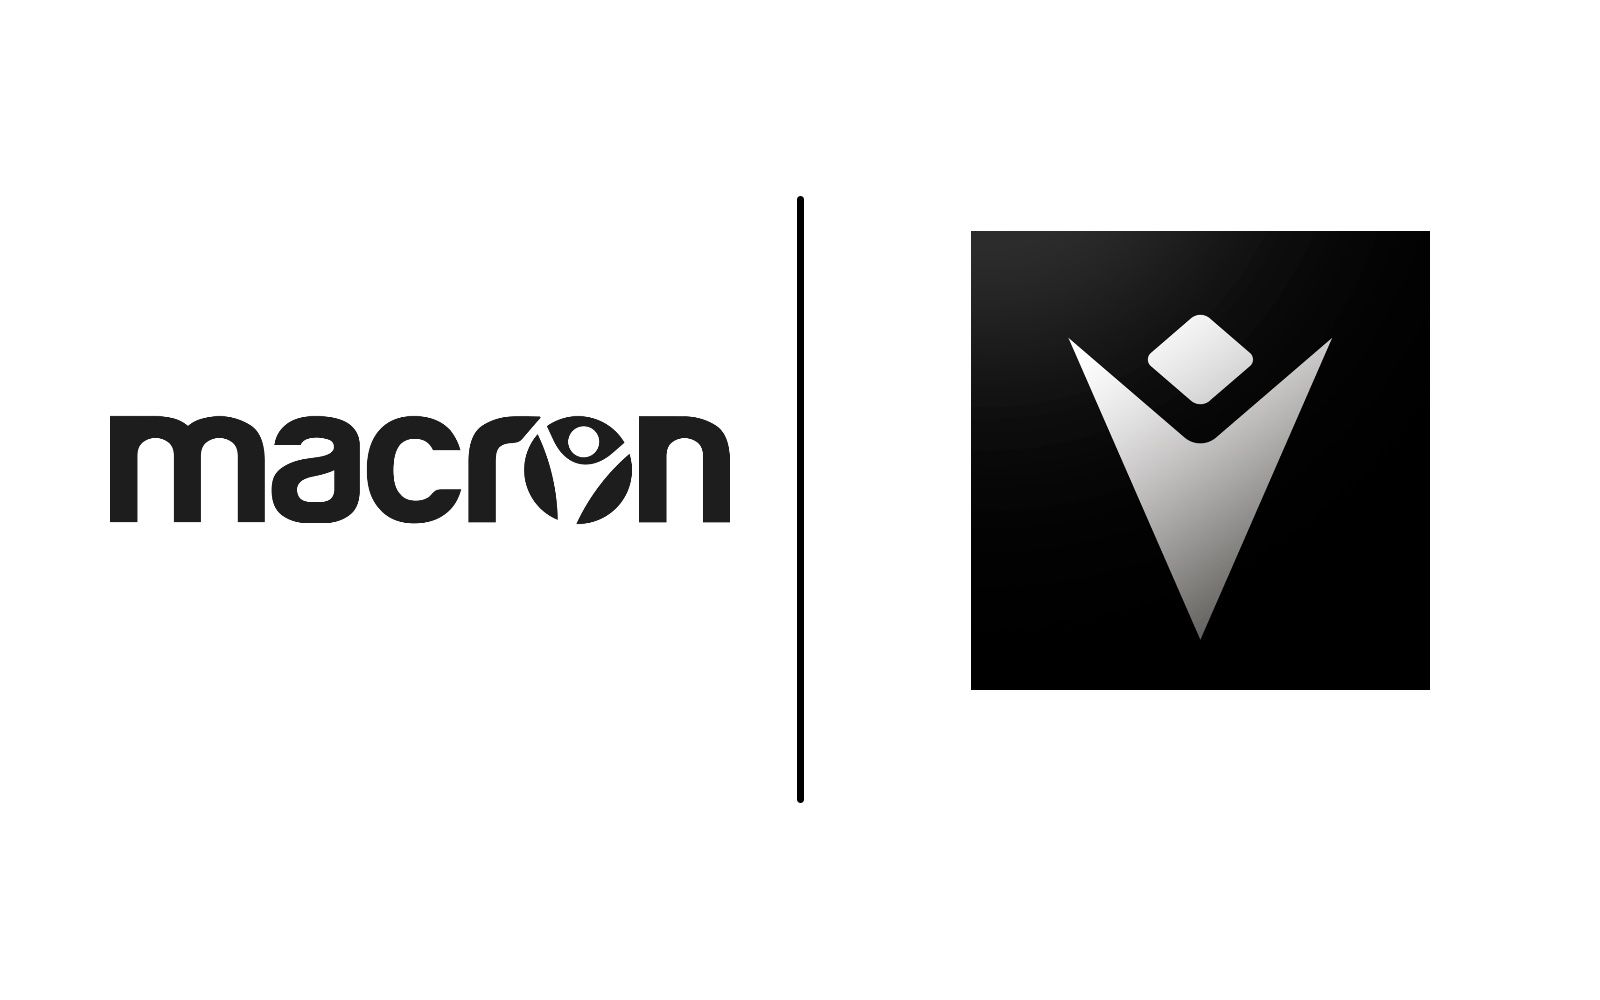 macron(體育用品品牌macron)